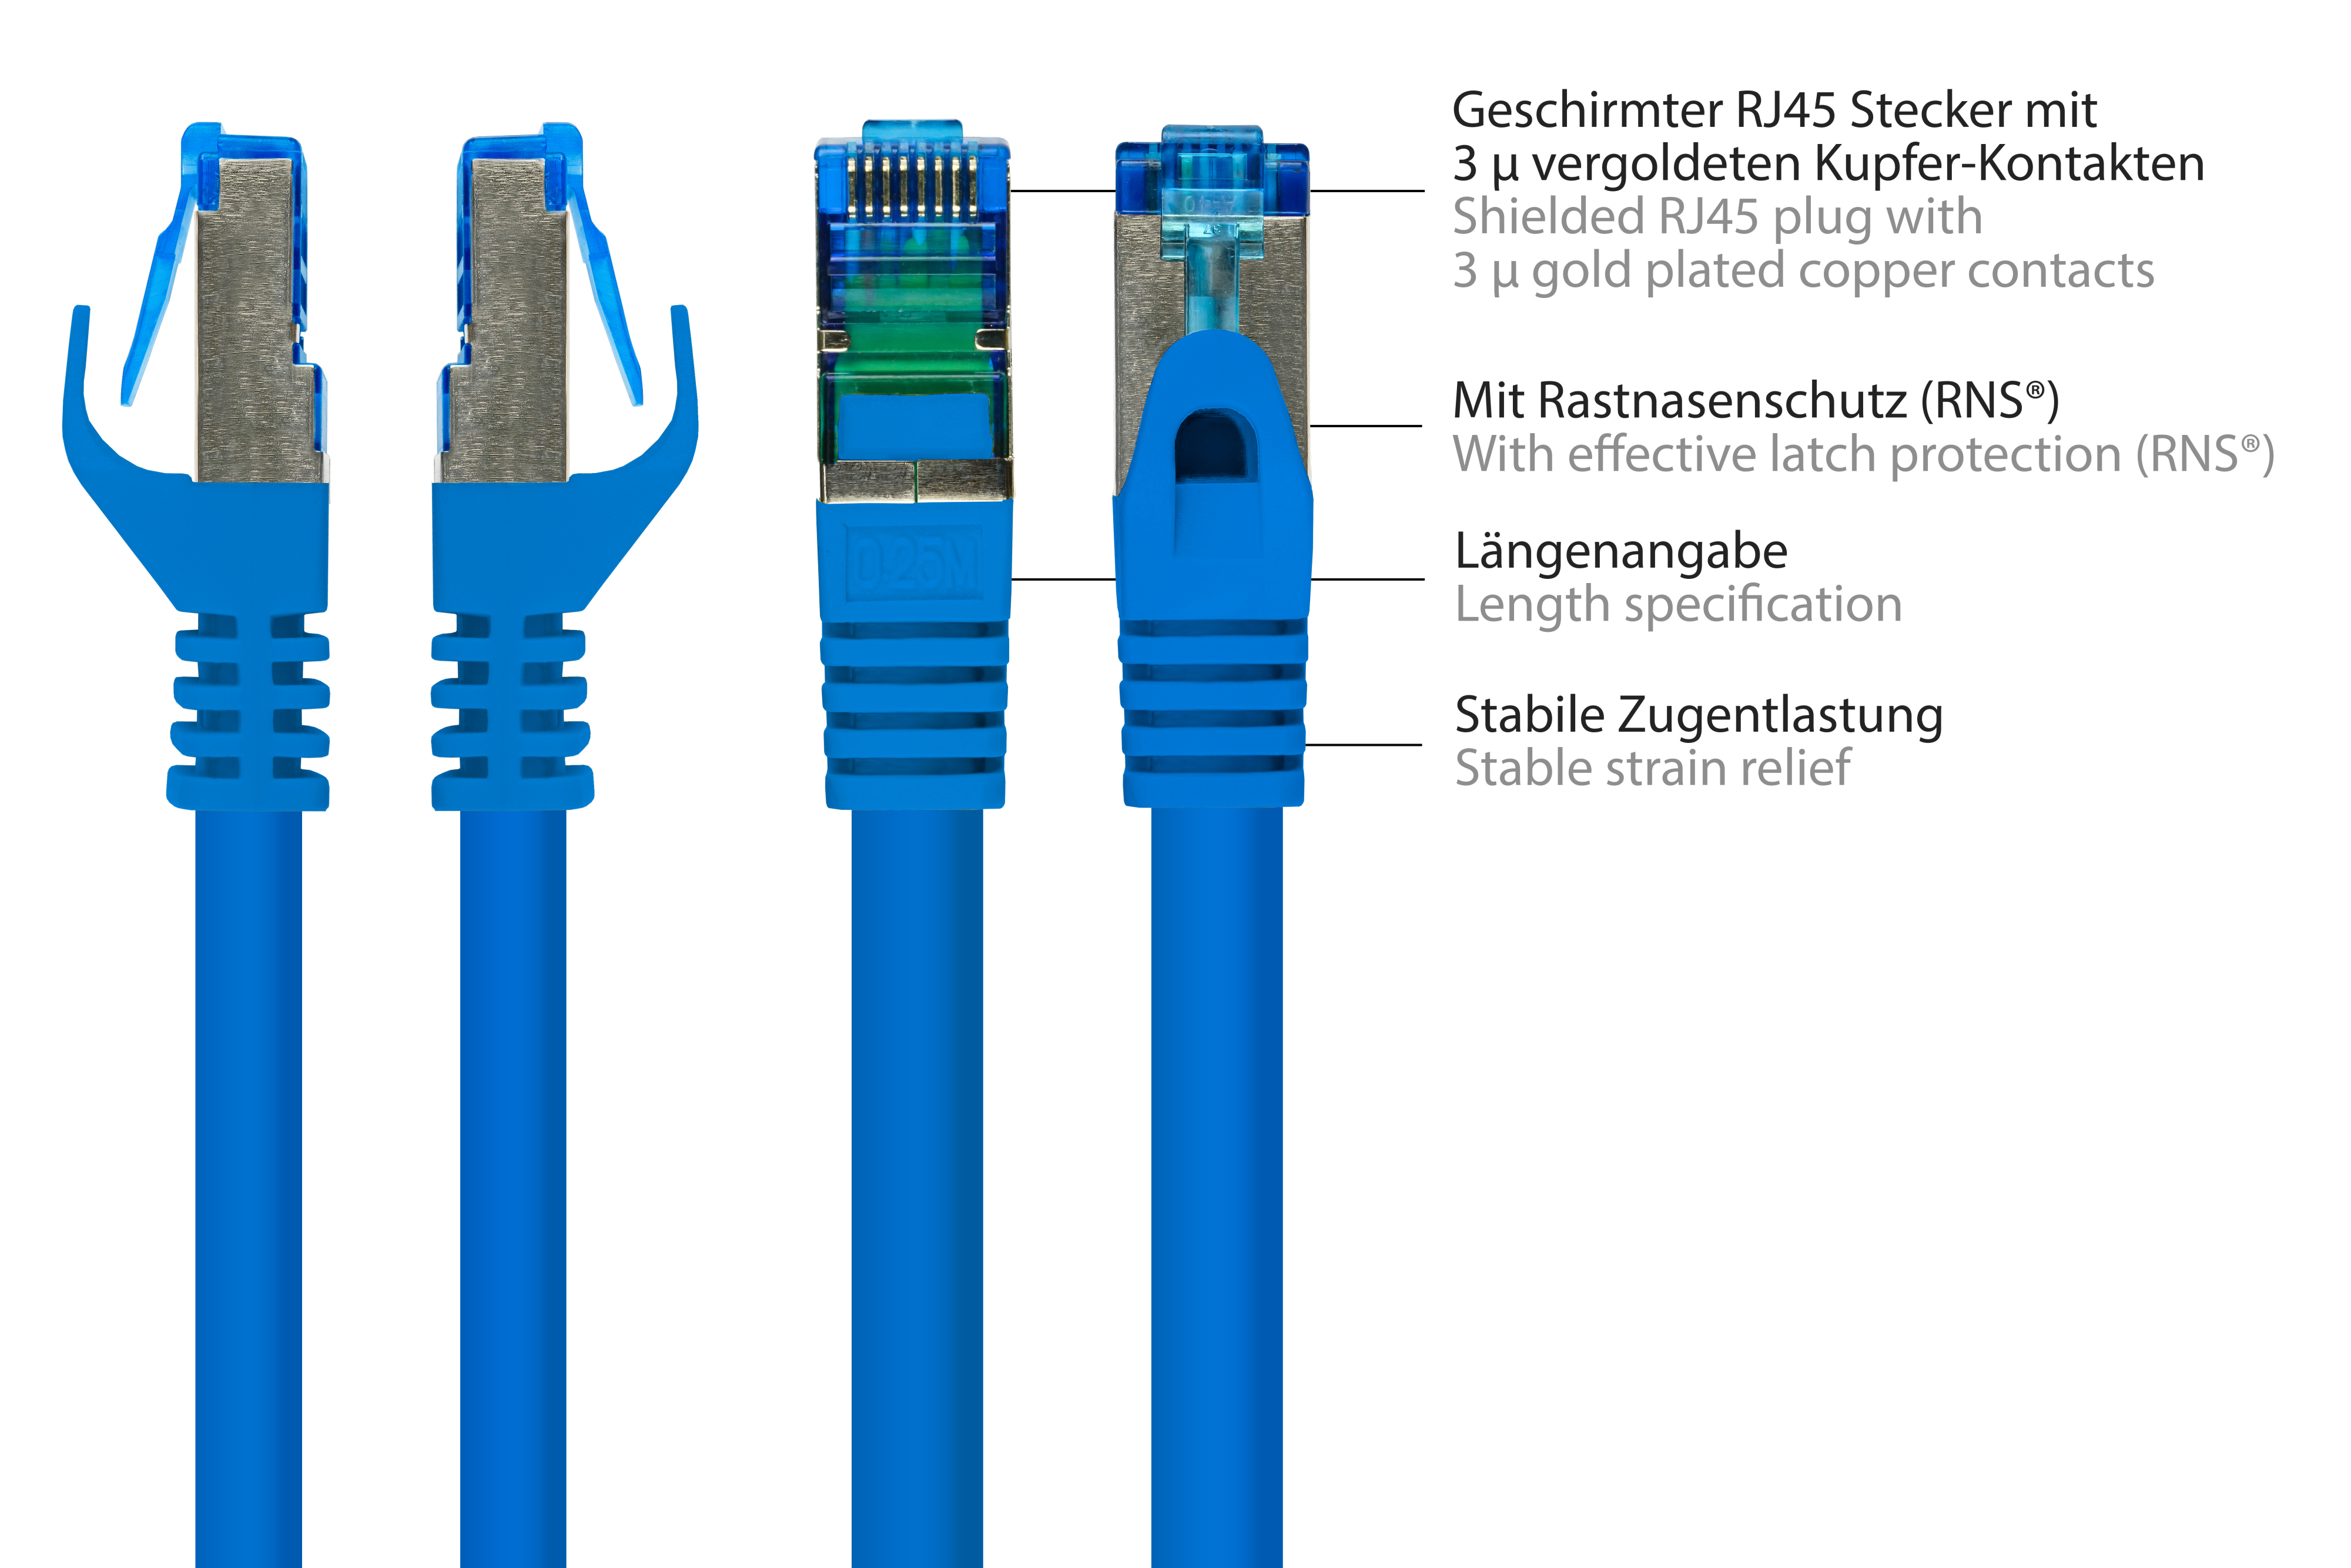 blau, S/FTP, 20 halogenfrei, m Netzwerkkabel, 500MHz, GOOD CONNECTIONS PiMF,